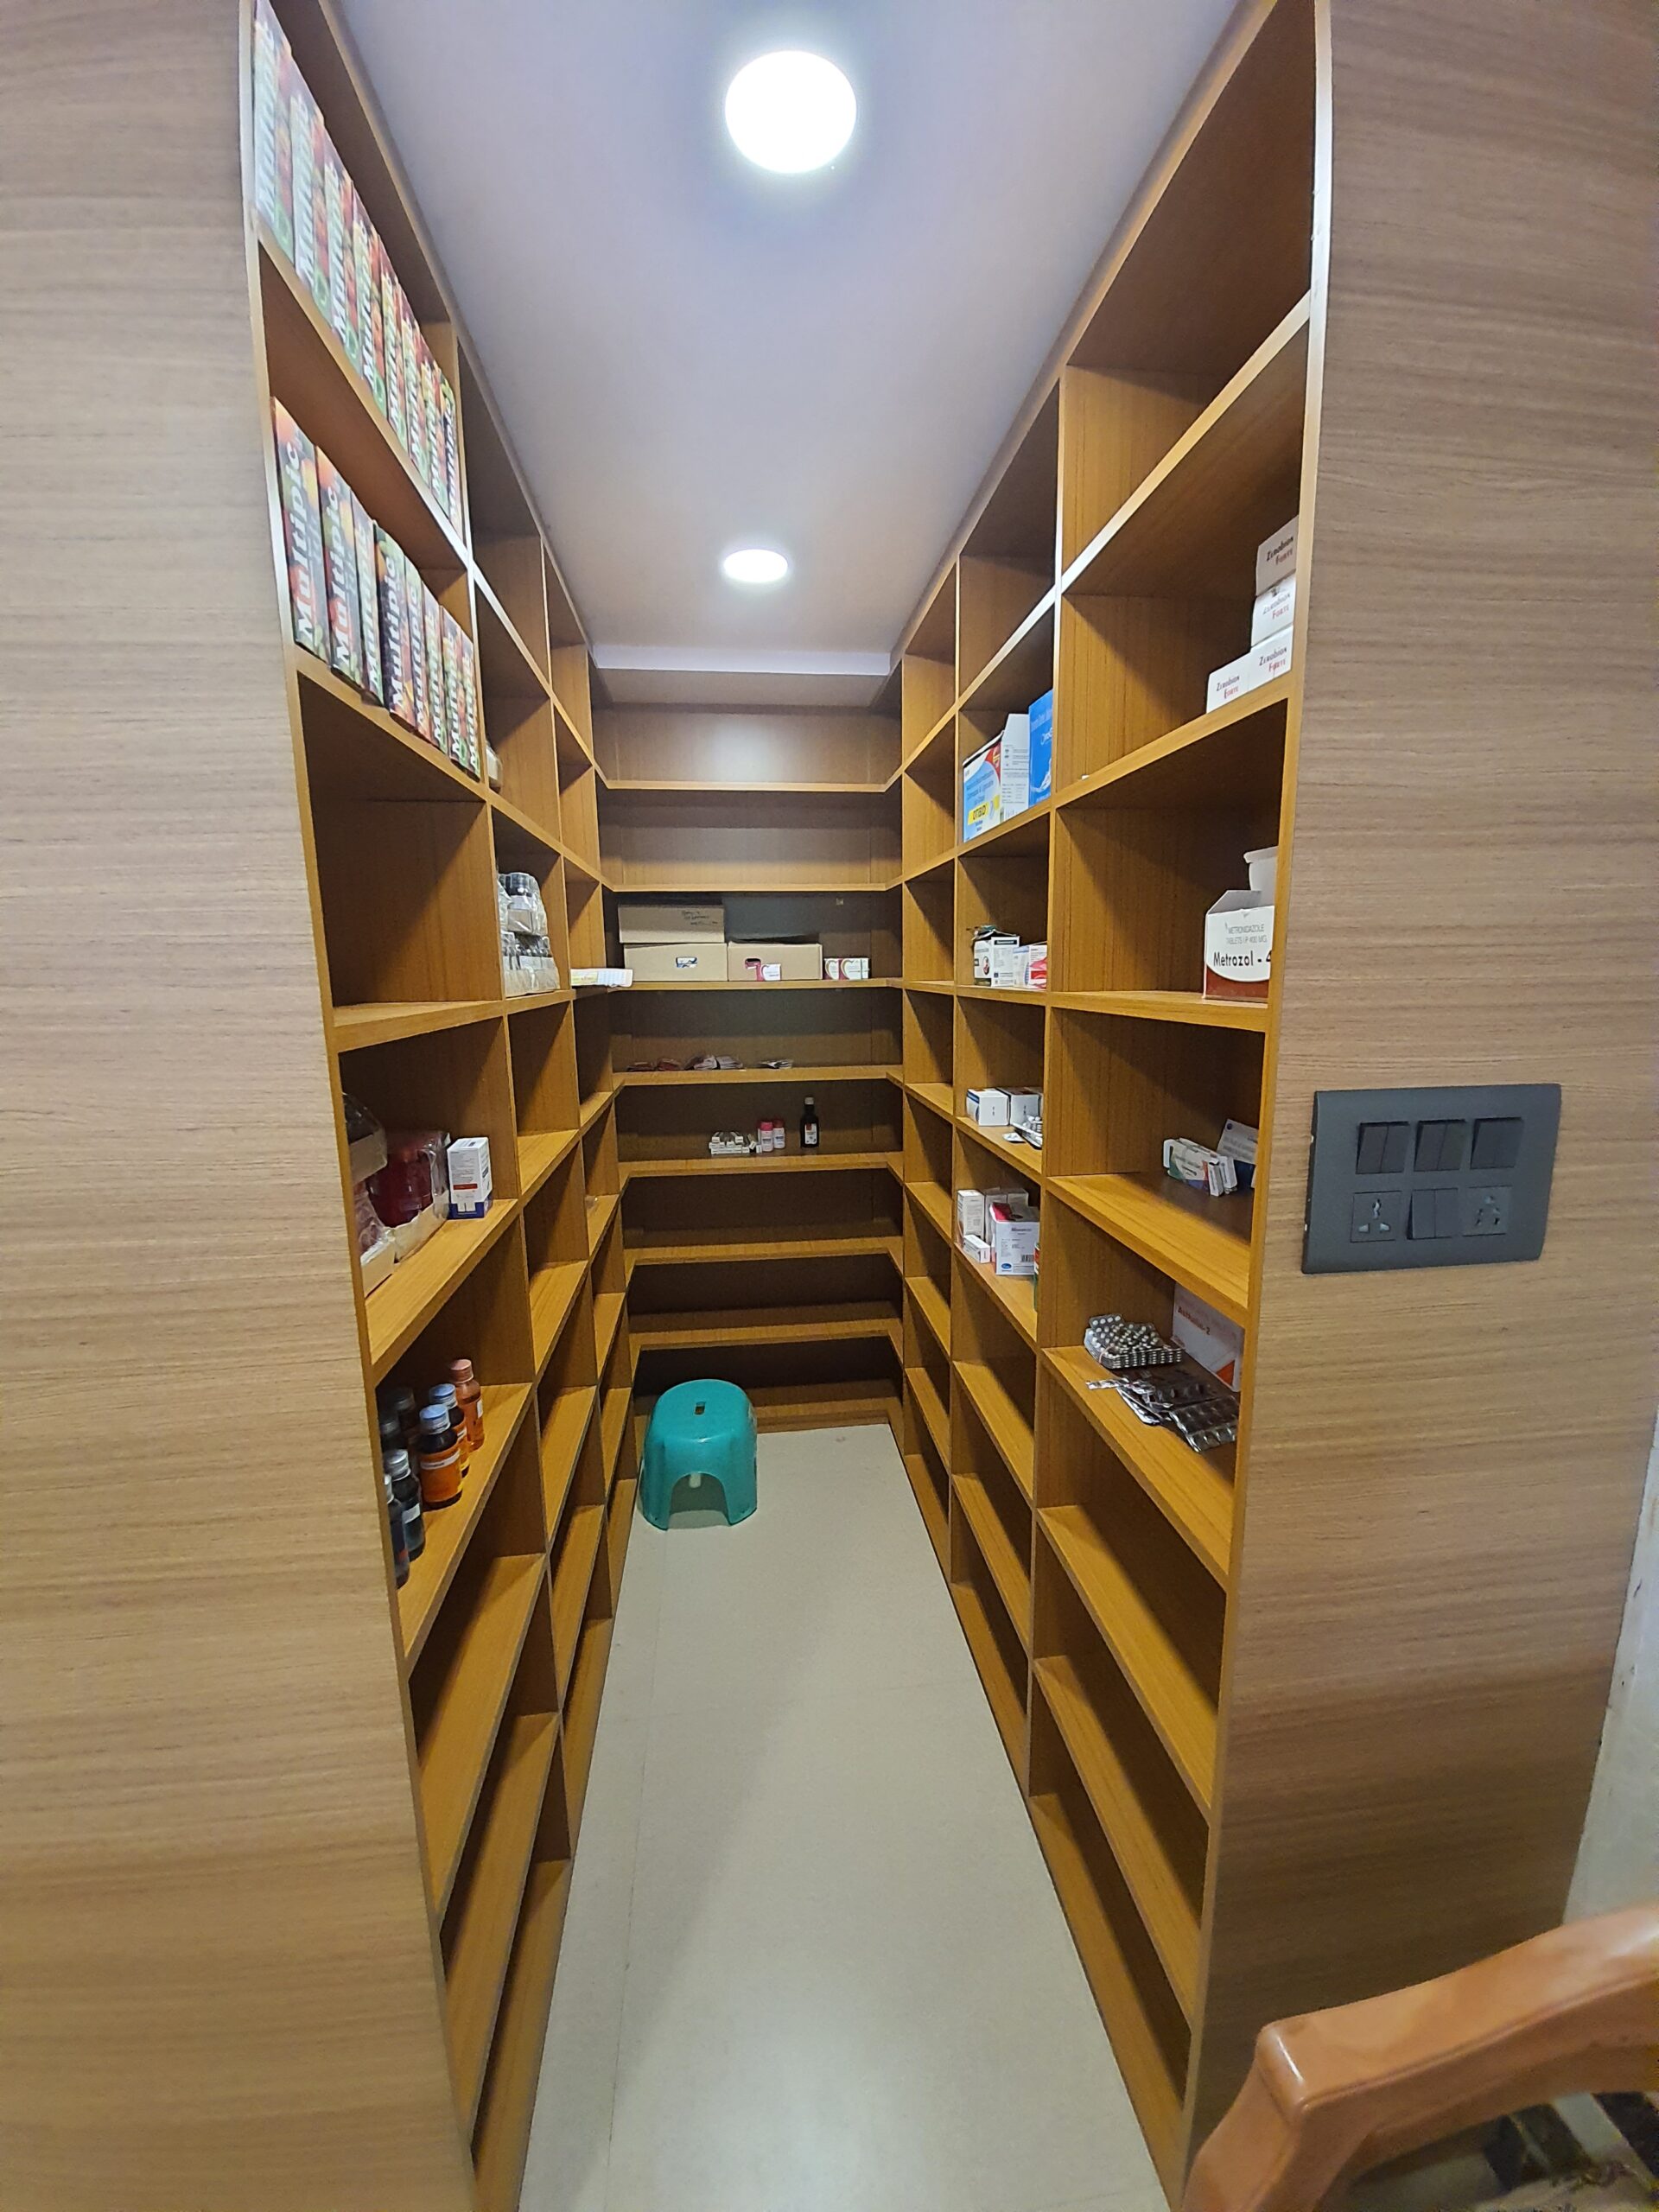 Pharmacy Shelves